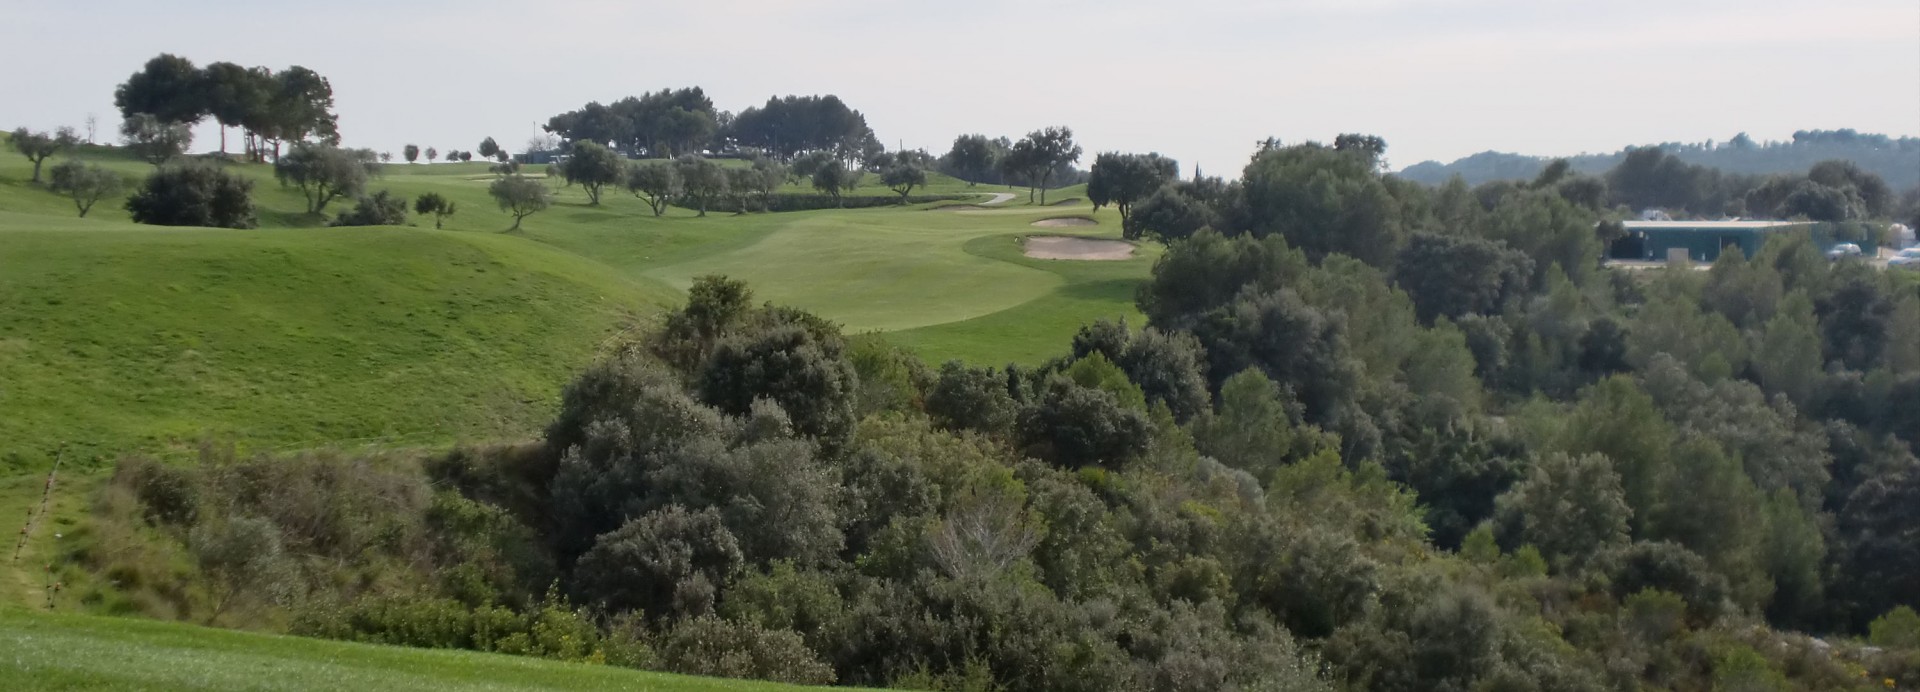 La Graiera golf club  | Golfové zájezdy, golfová dovolená, luxusní golf